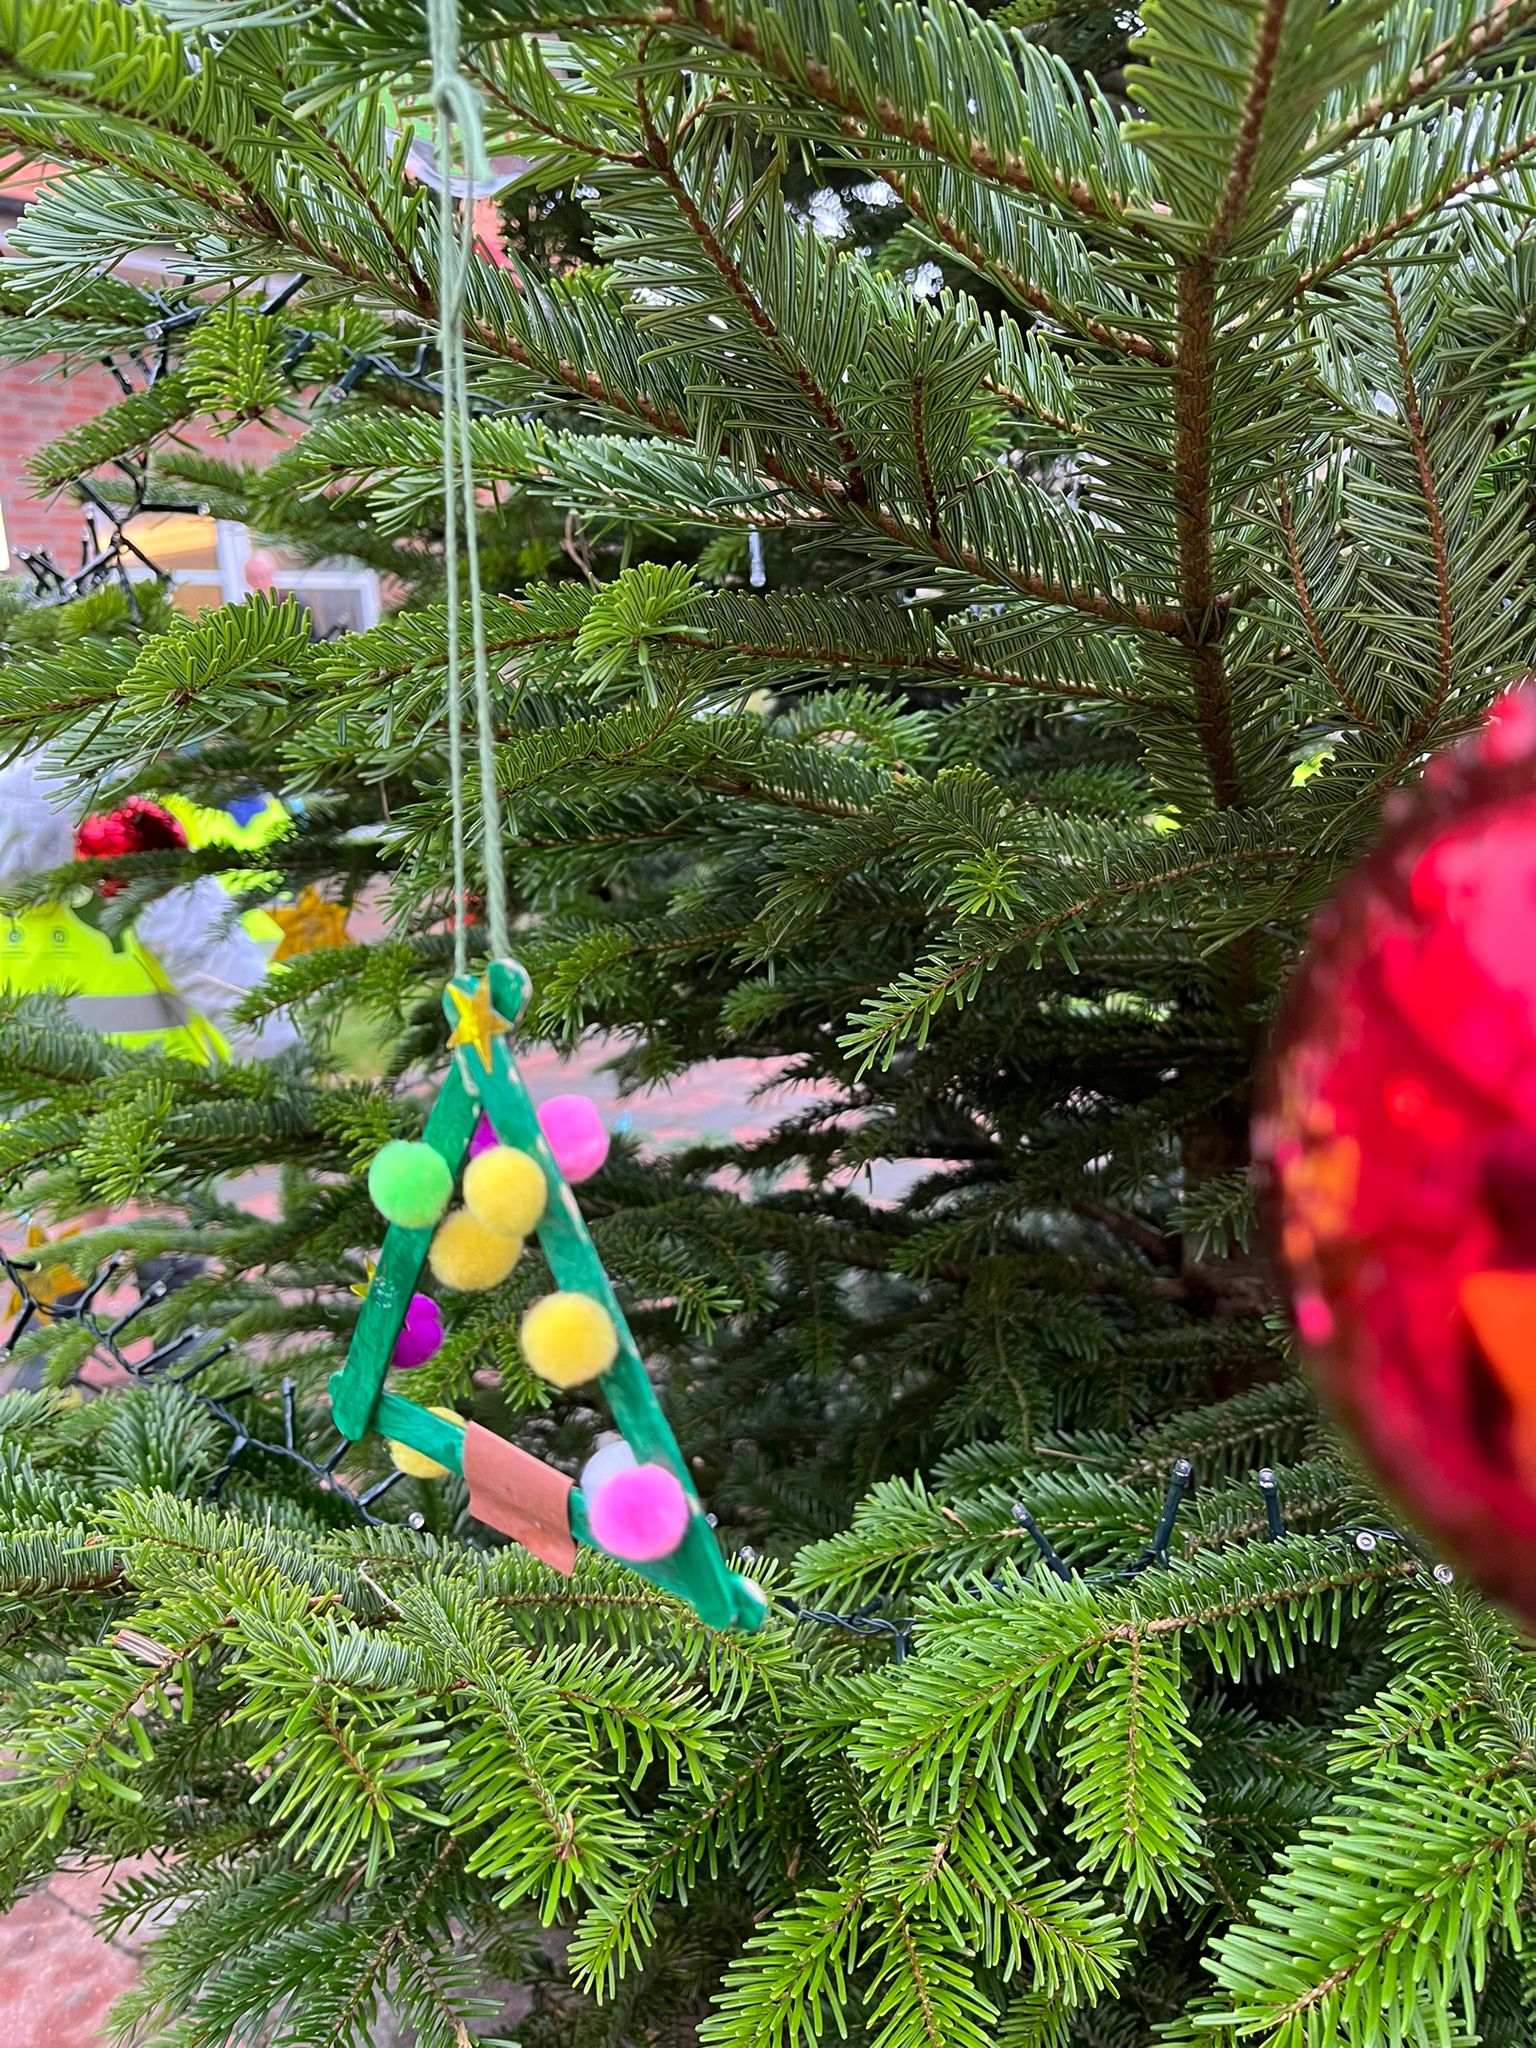 Wir sind heute der Einladung nachgekommen, im Seniorenzentrum den Weihnachtsbaum zu schmücken. Groß und Klein hatten viel Freude und beim singen unsere Weihnachtslieder am Weihnachtsbaum kam Vorweihnachtsstimmung auf. Danke, dass wir zu Besuch sein durften.